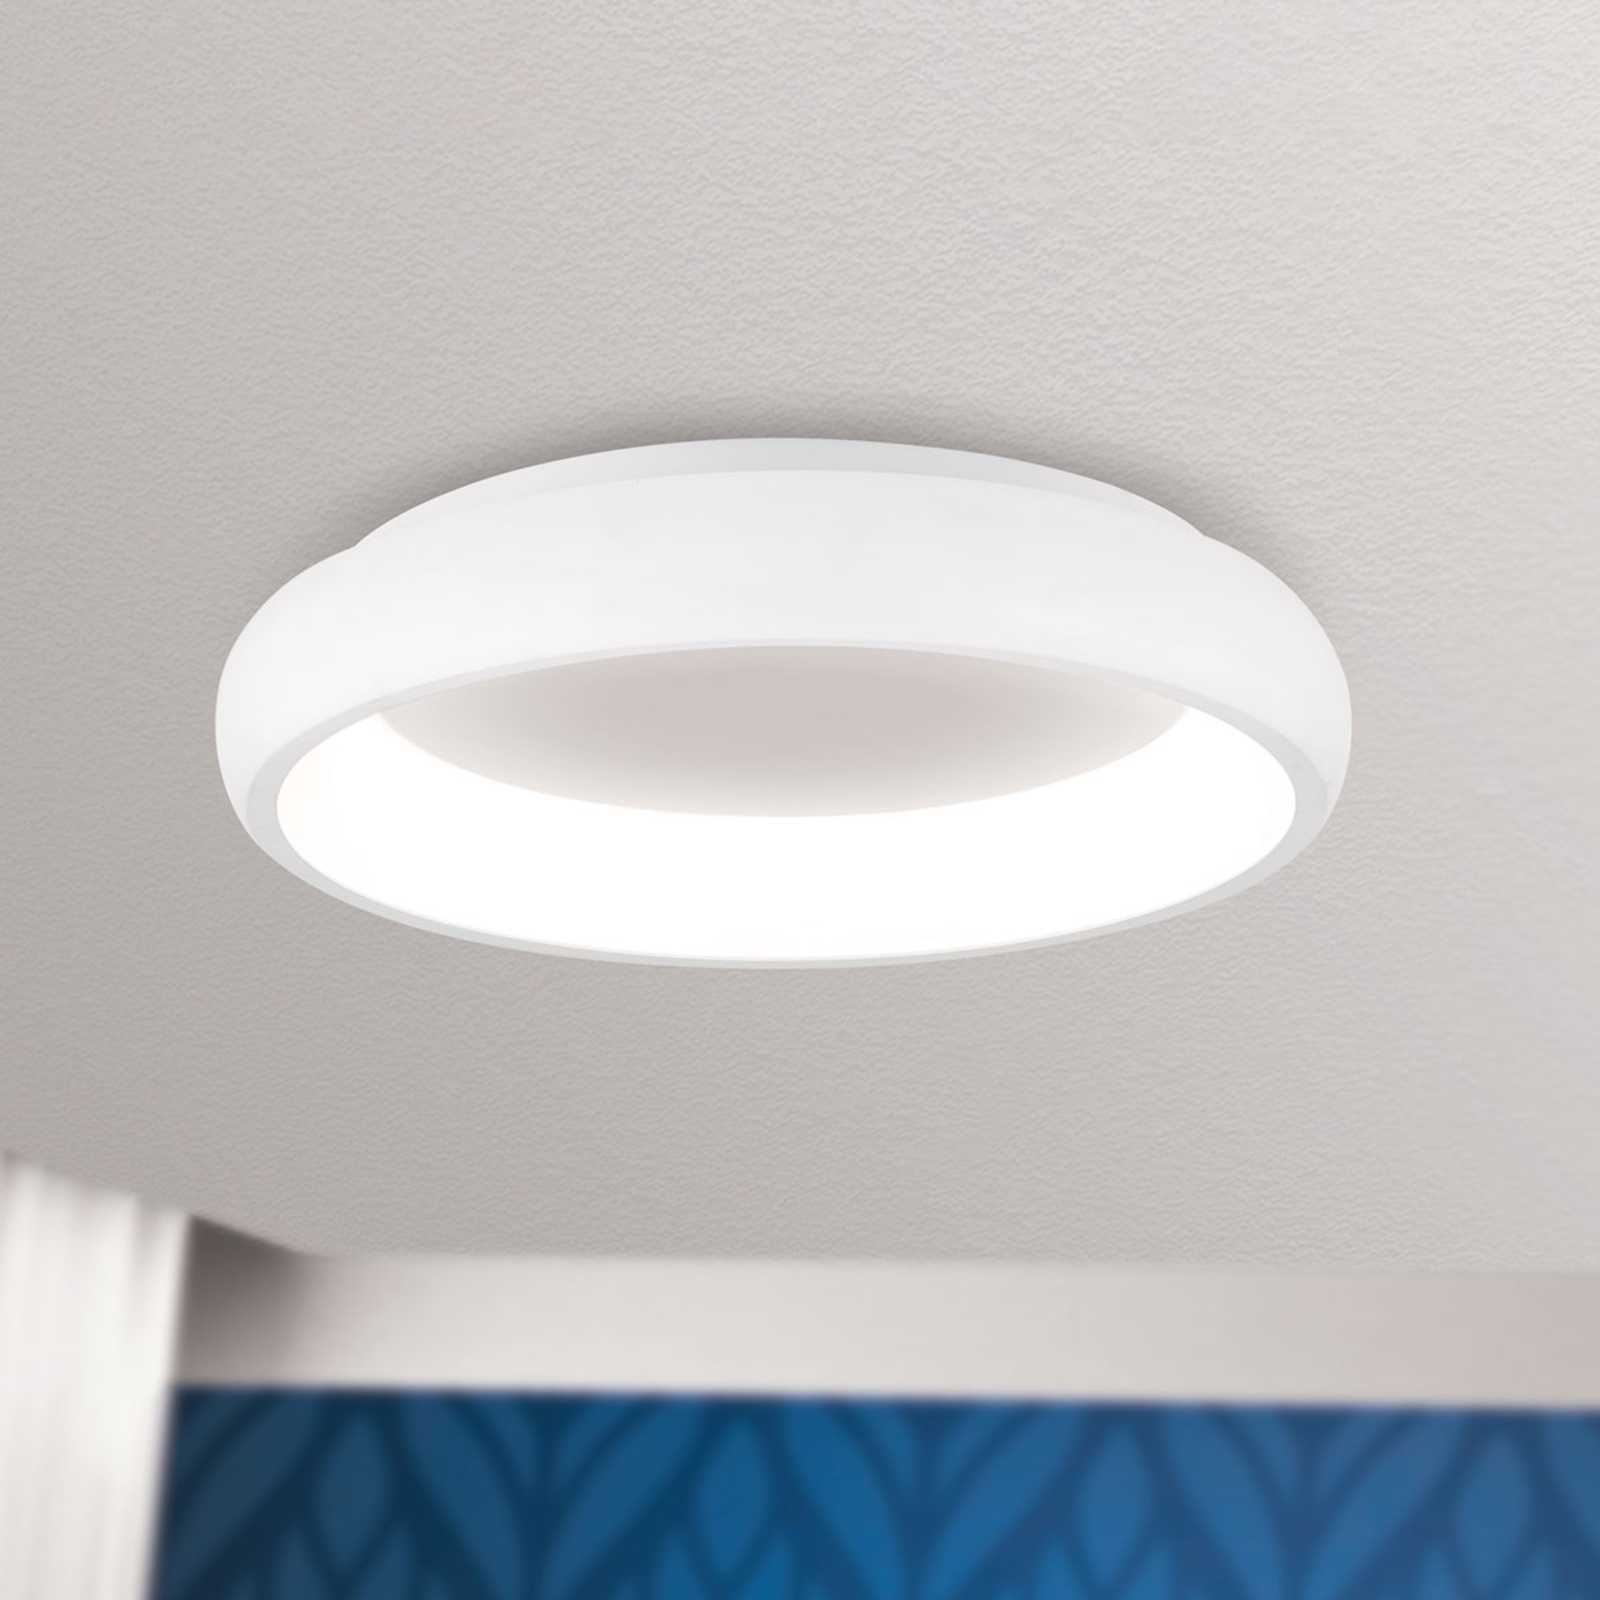 LED-Deckenlampe Venur m. Lichtaustritt innen 41cm